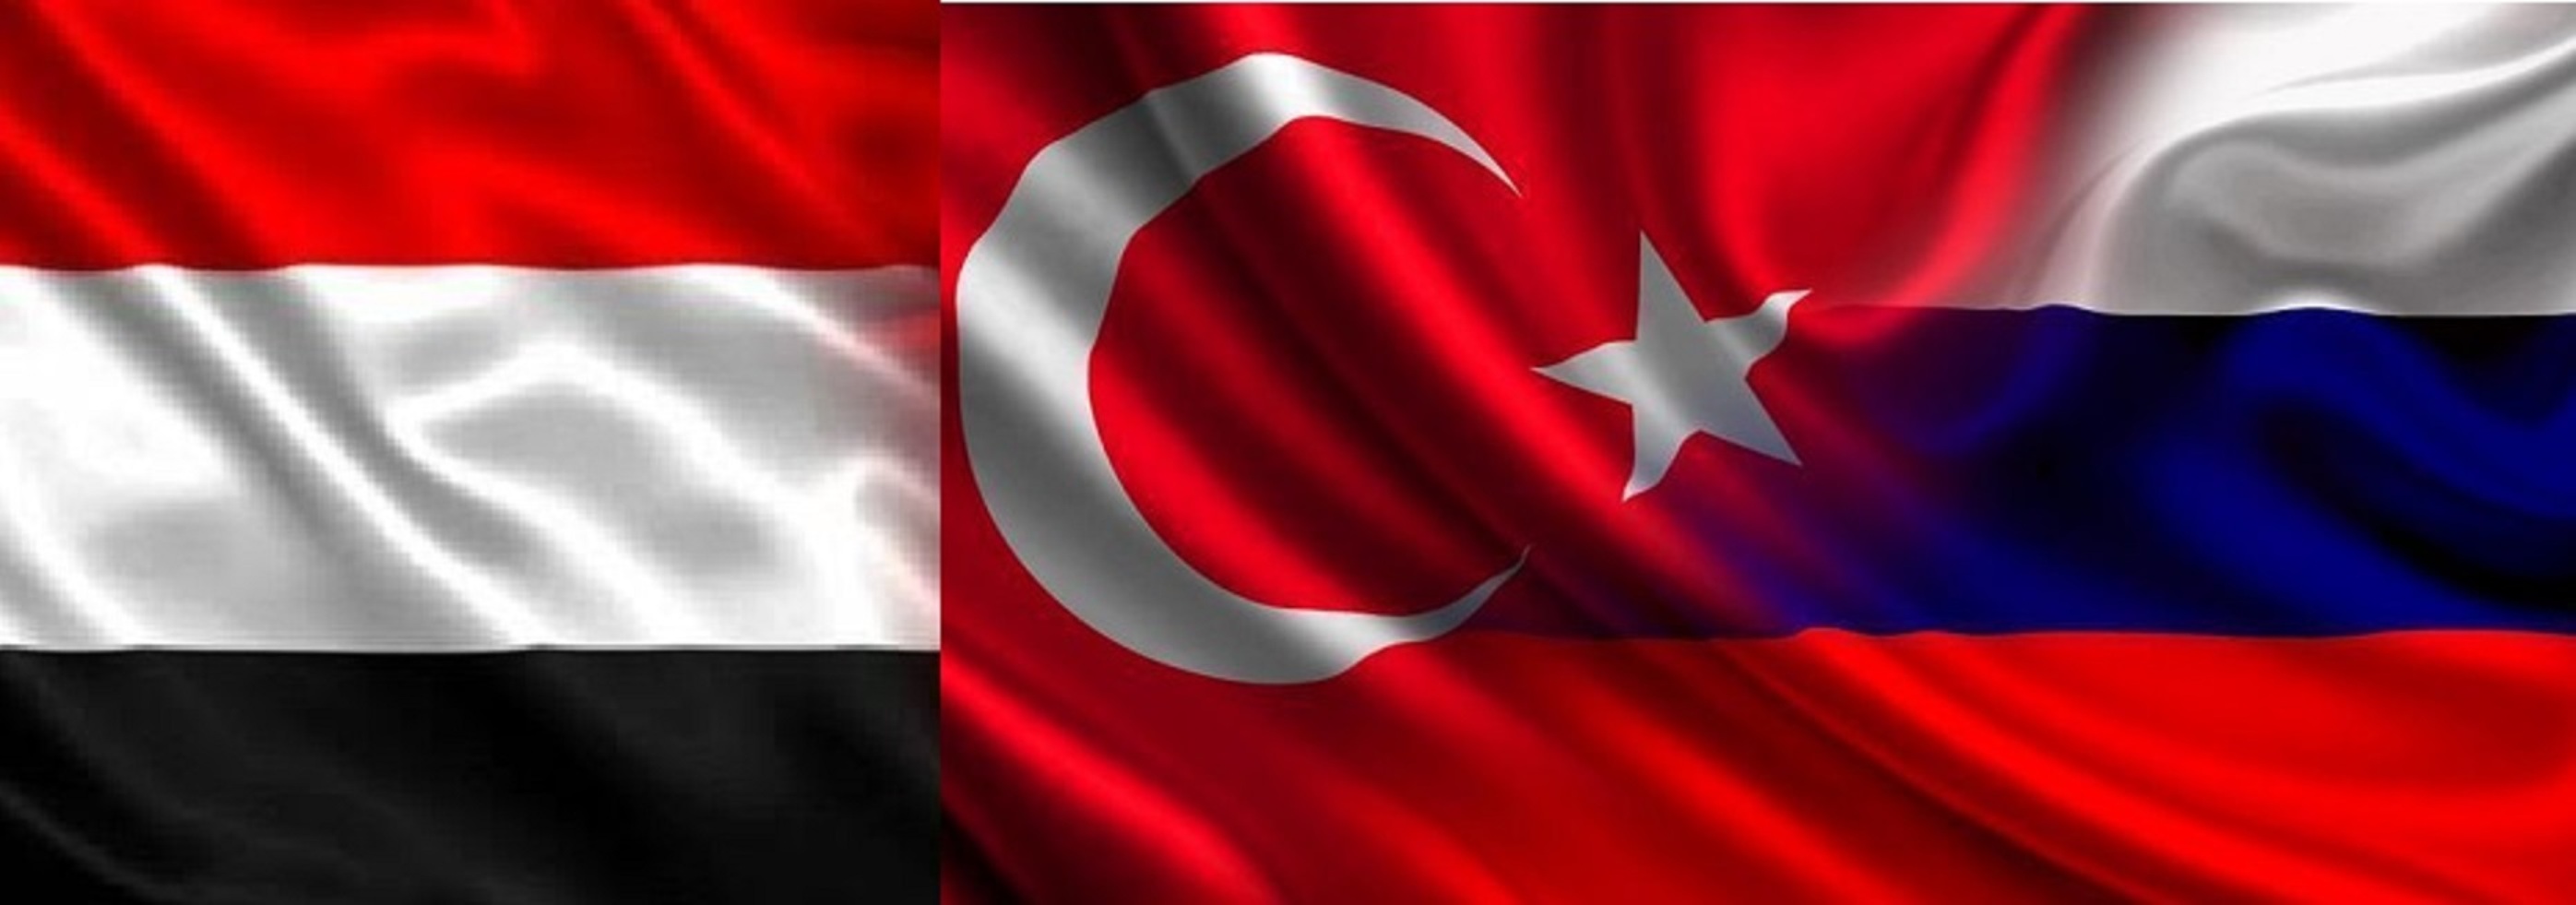 اليمن يعقد لقائين هامين مع تركيا وروسيا بشأن التطورات (تفاصيل)